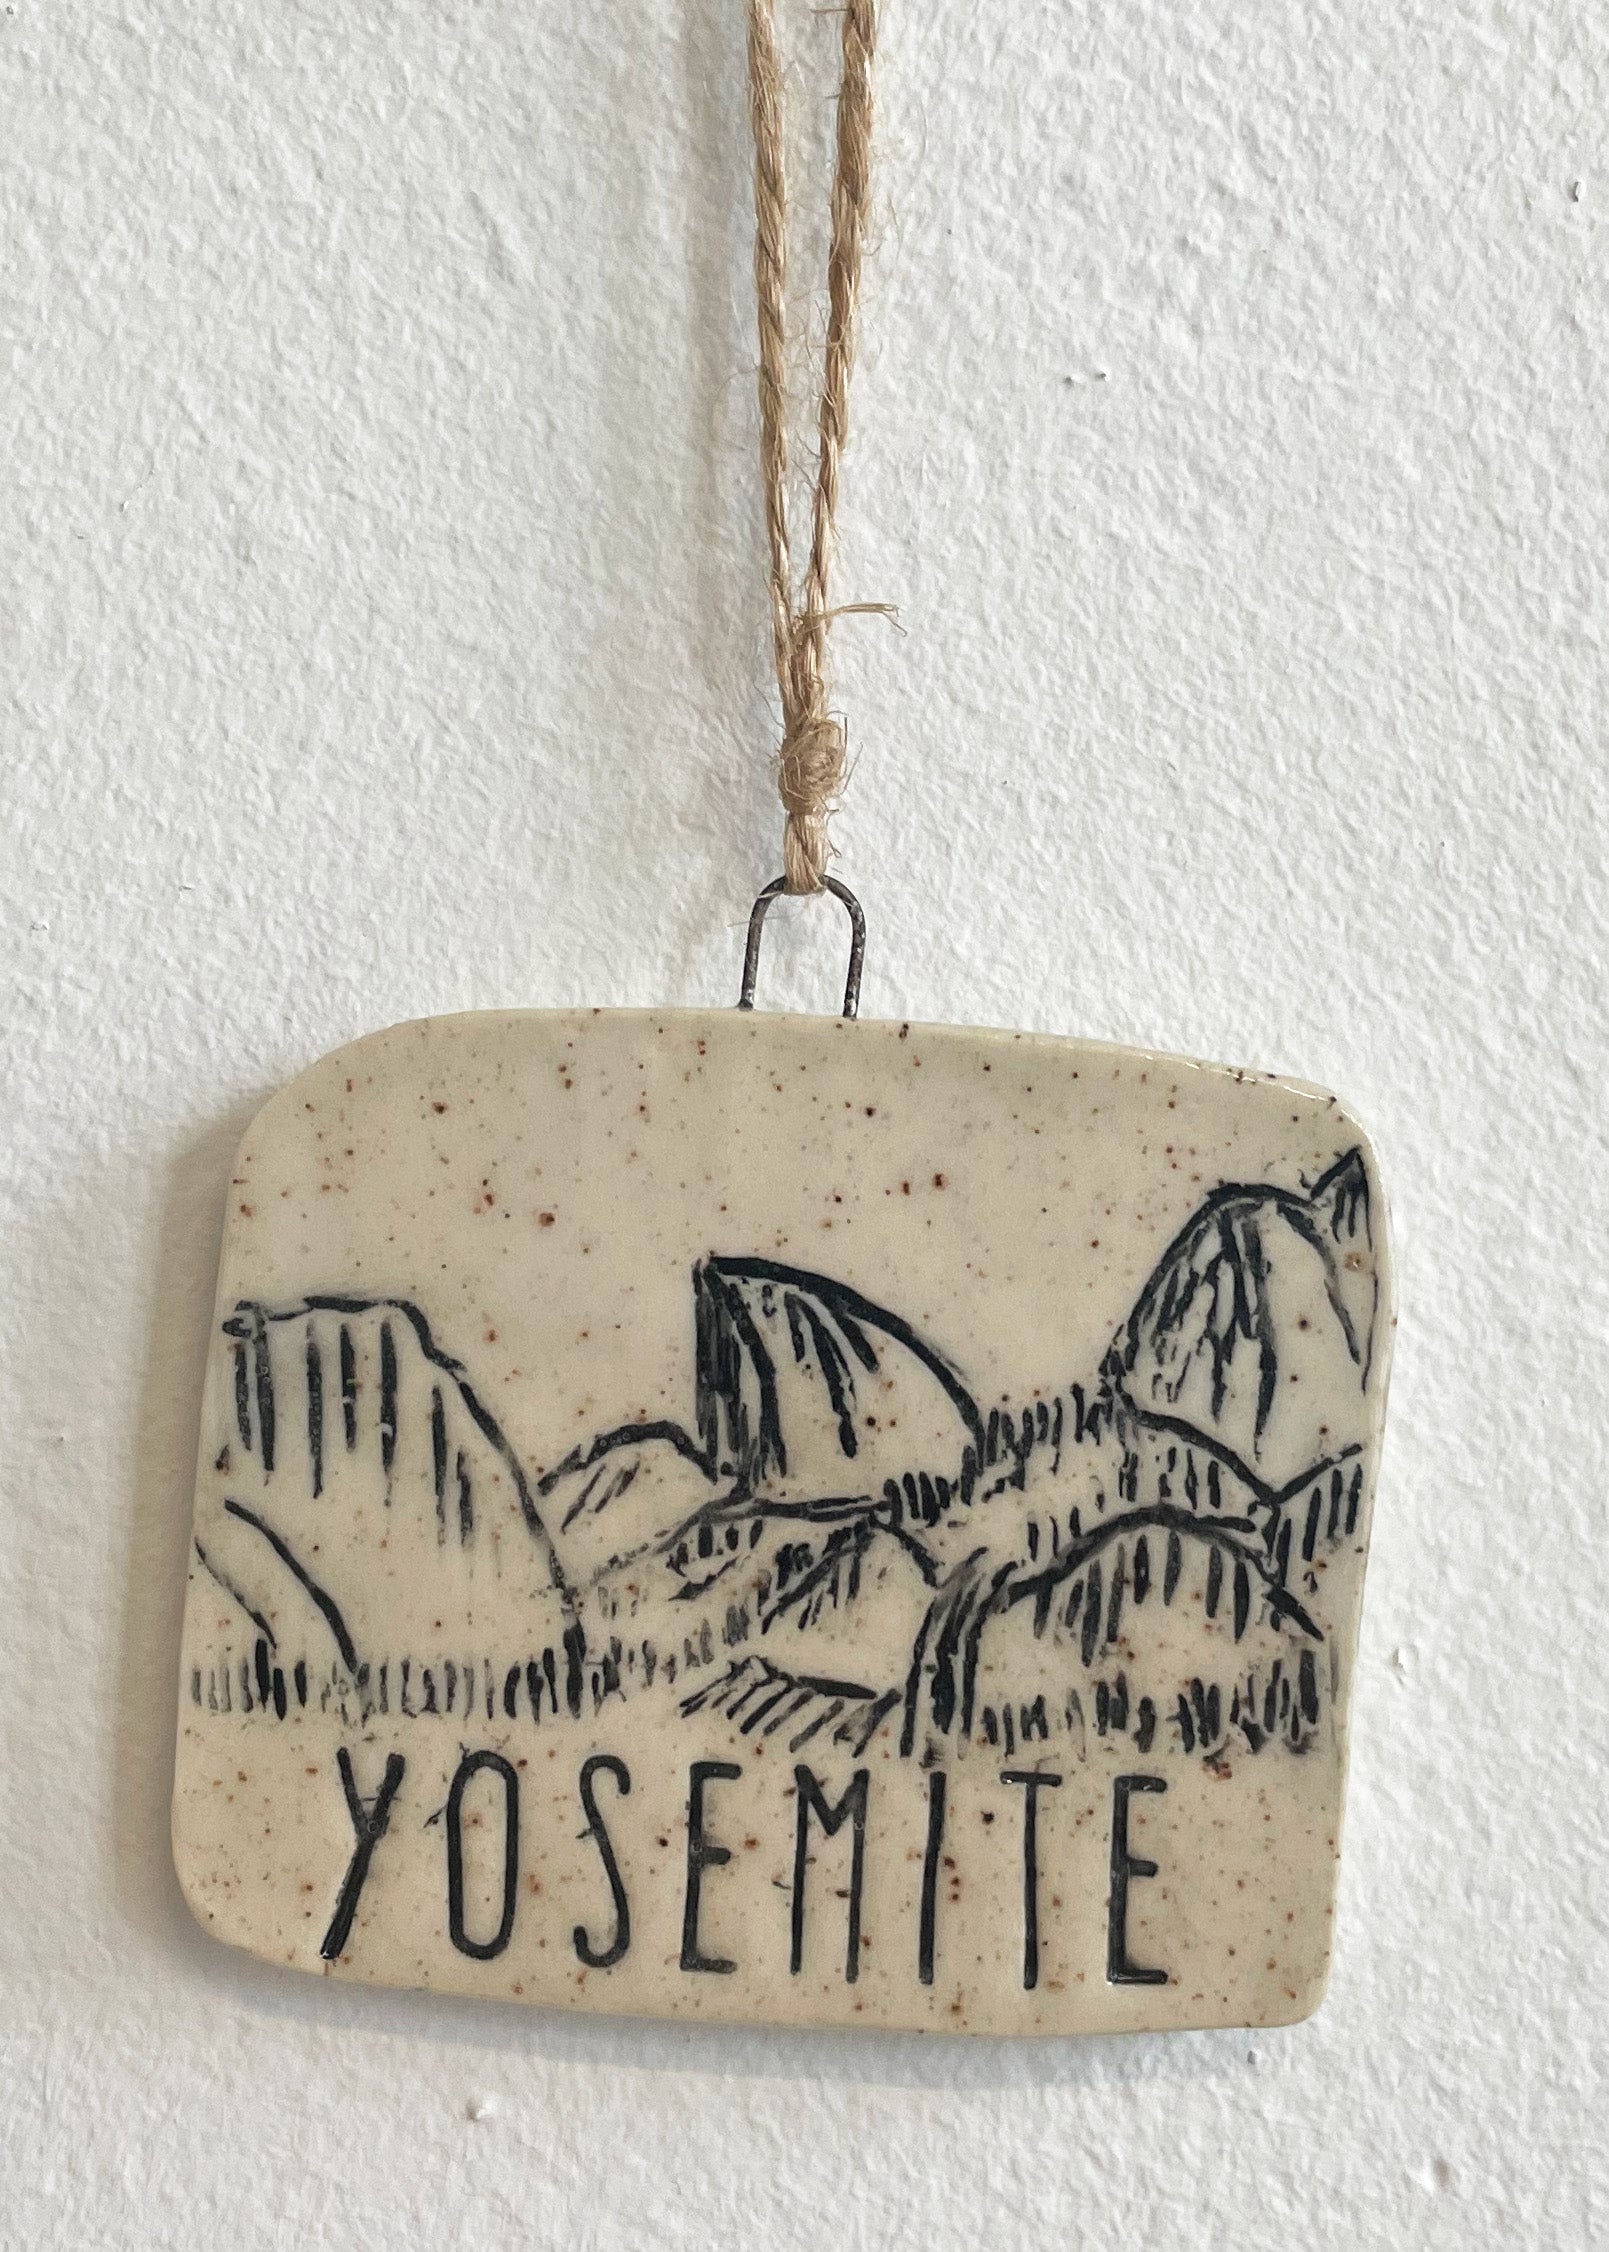 Yosemite Tunnel View Ornament, No 1